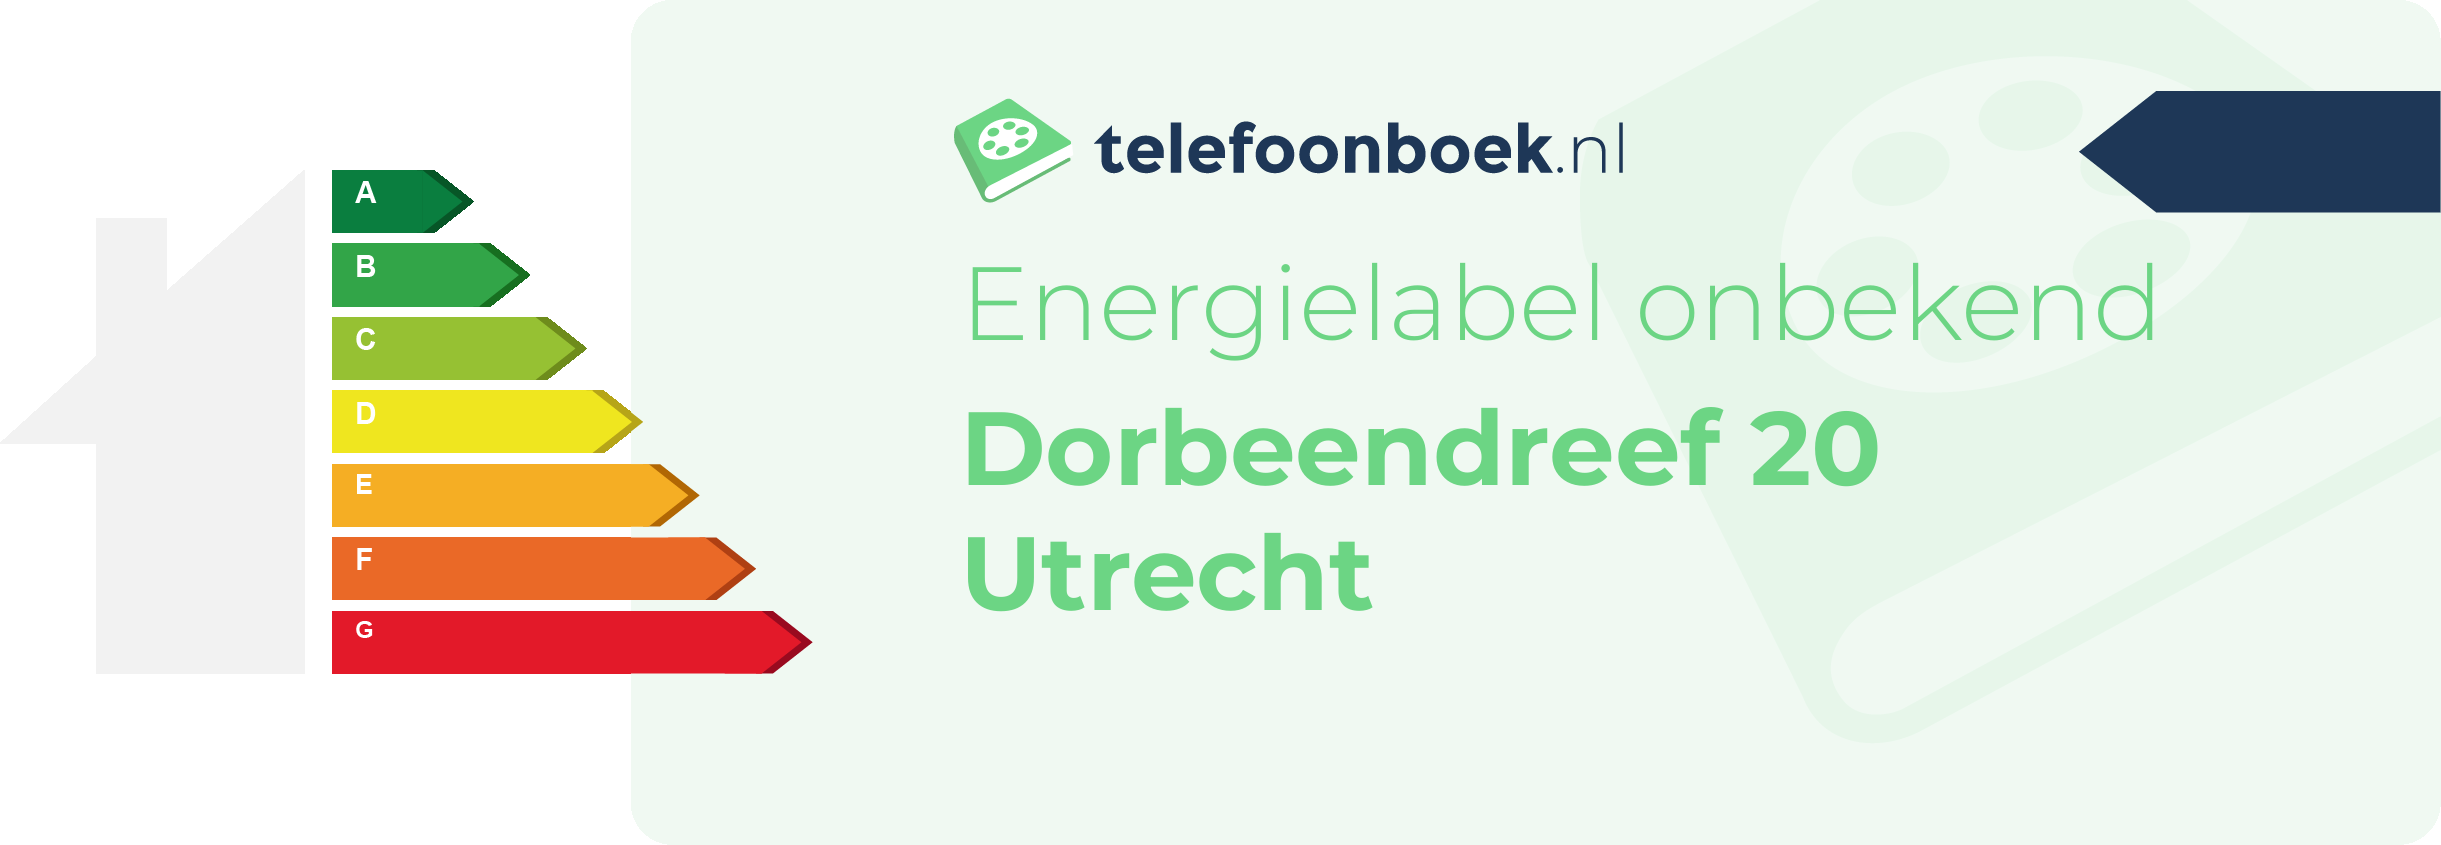 Energielabel Dorbeendreef 20 Utrecht